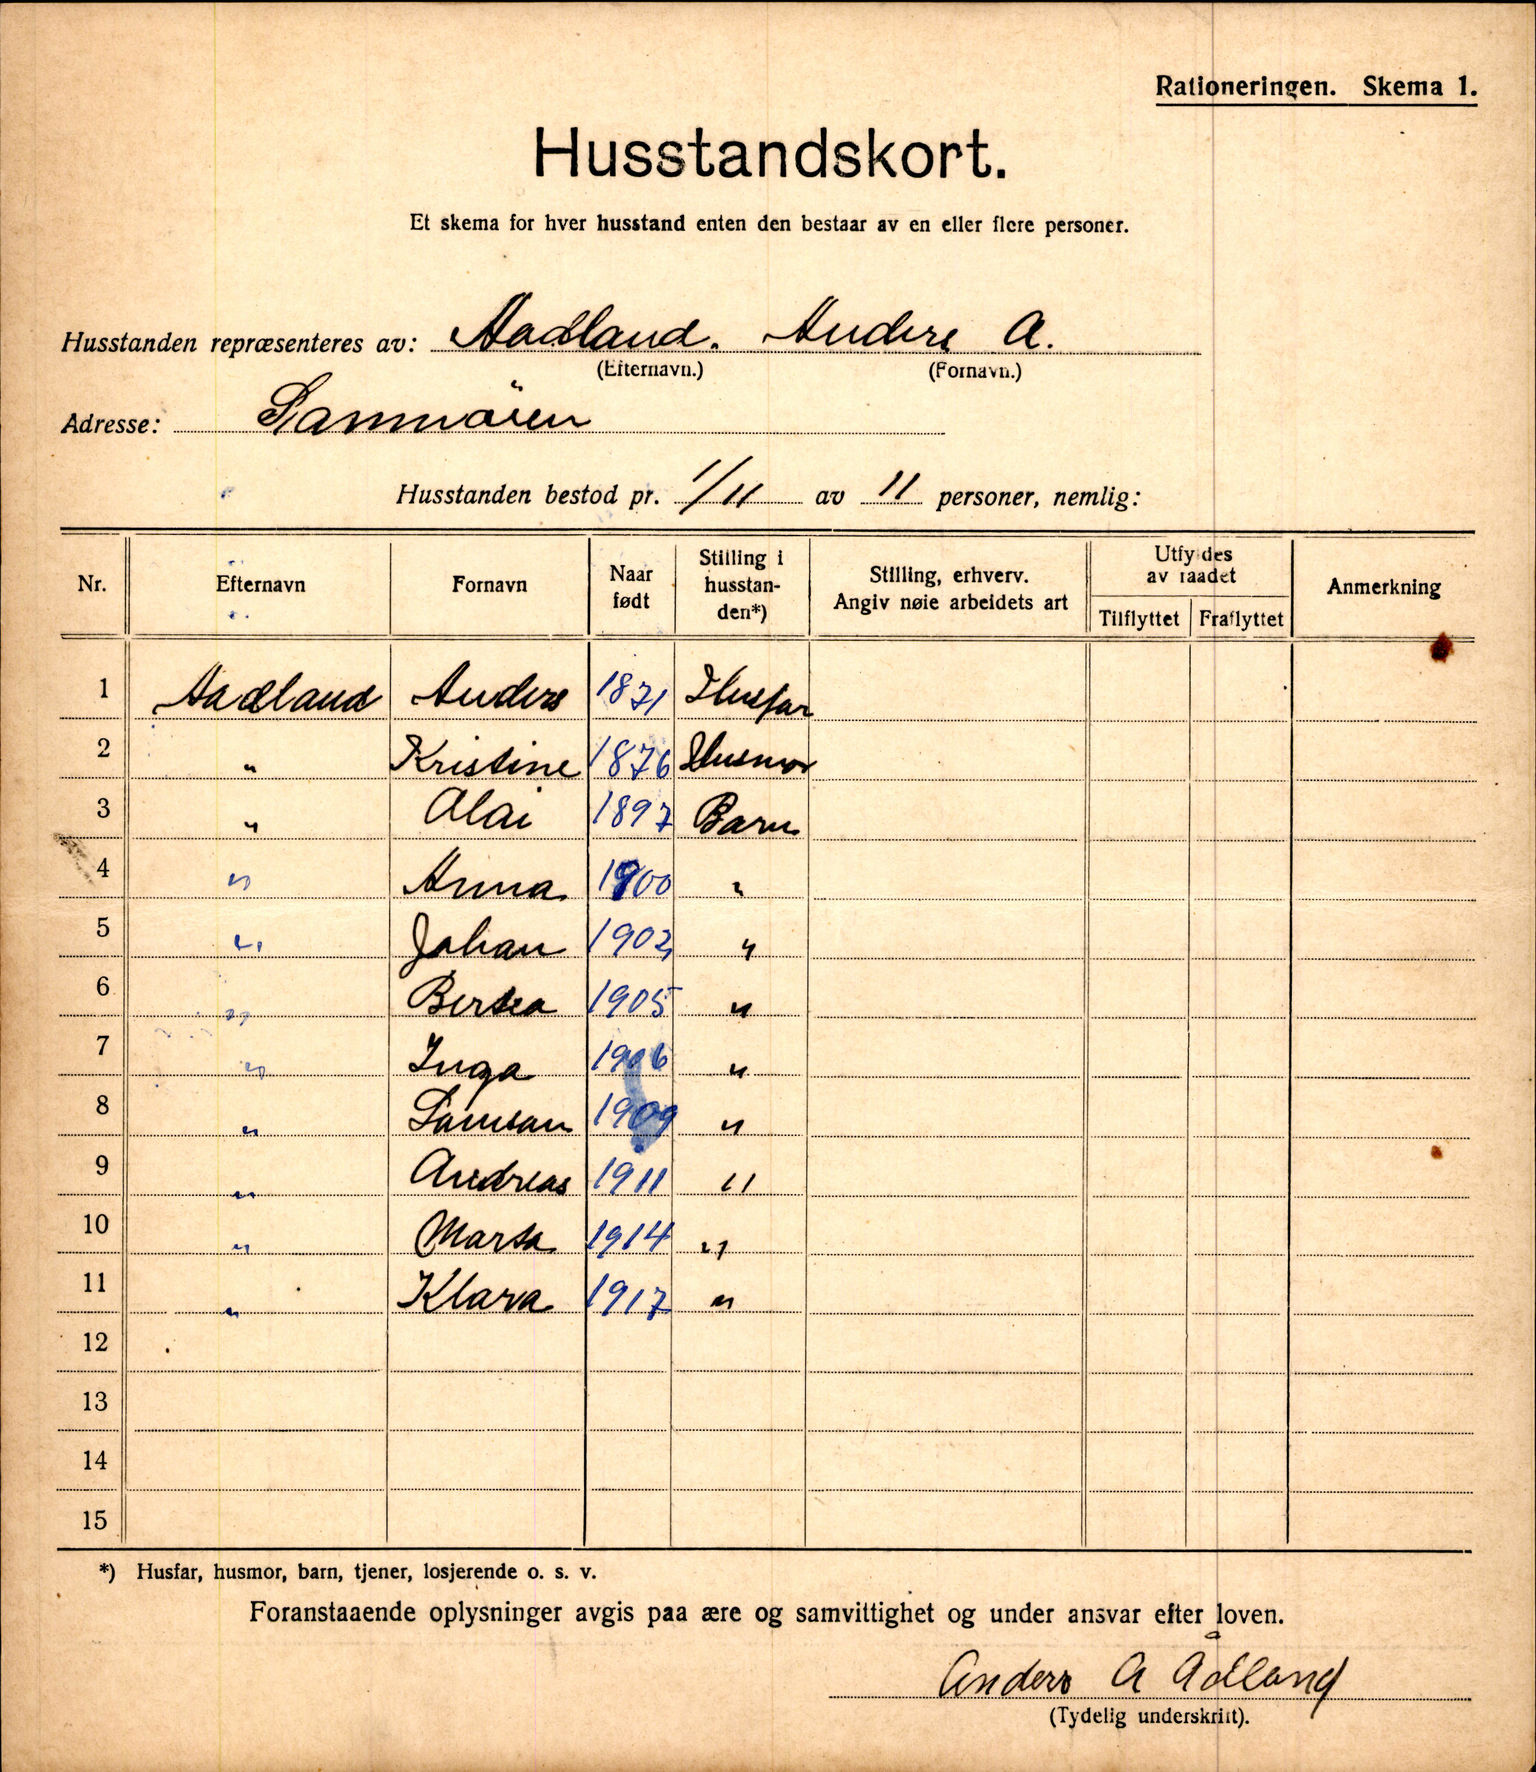 IKAH, Fusa kommune, Provianteringsrådet, Husstander per 01.11.1917, 1917